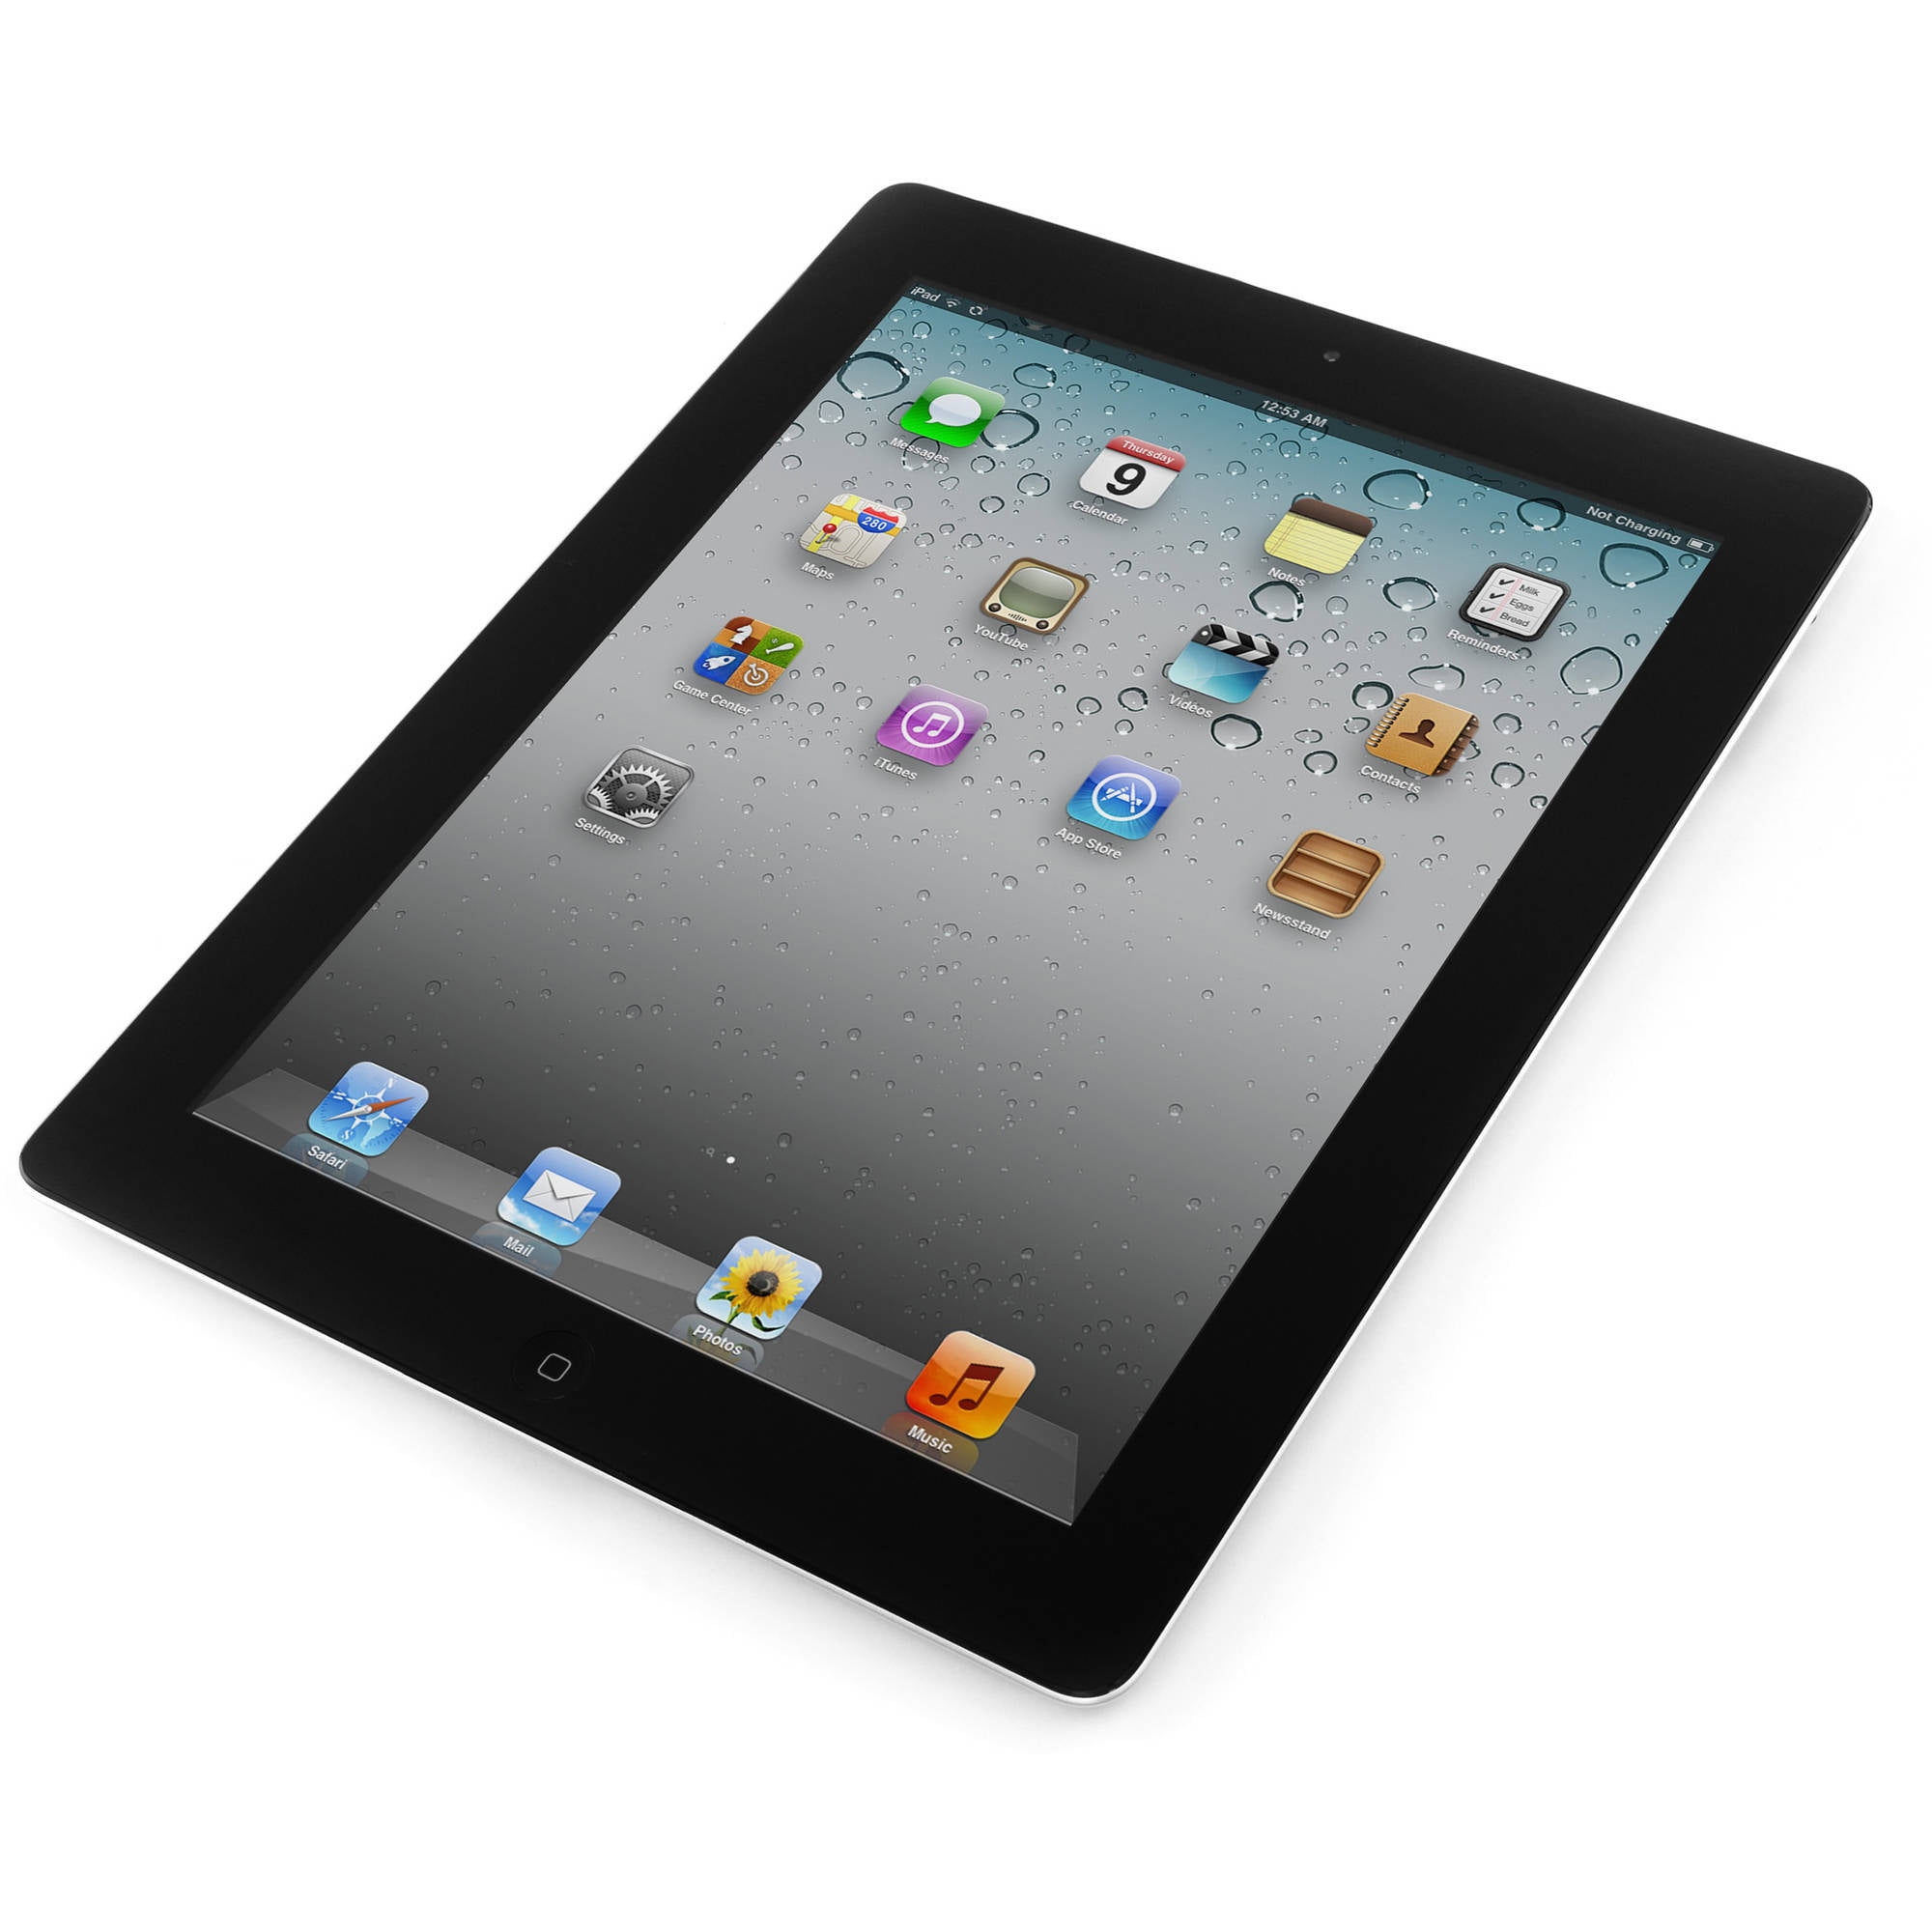 Apple iPad 2nd 9.7" Display, Wi-Fi, 16GB, Black (MC769LL/A) (Used) - Walmart.com